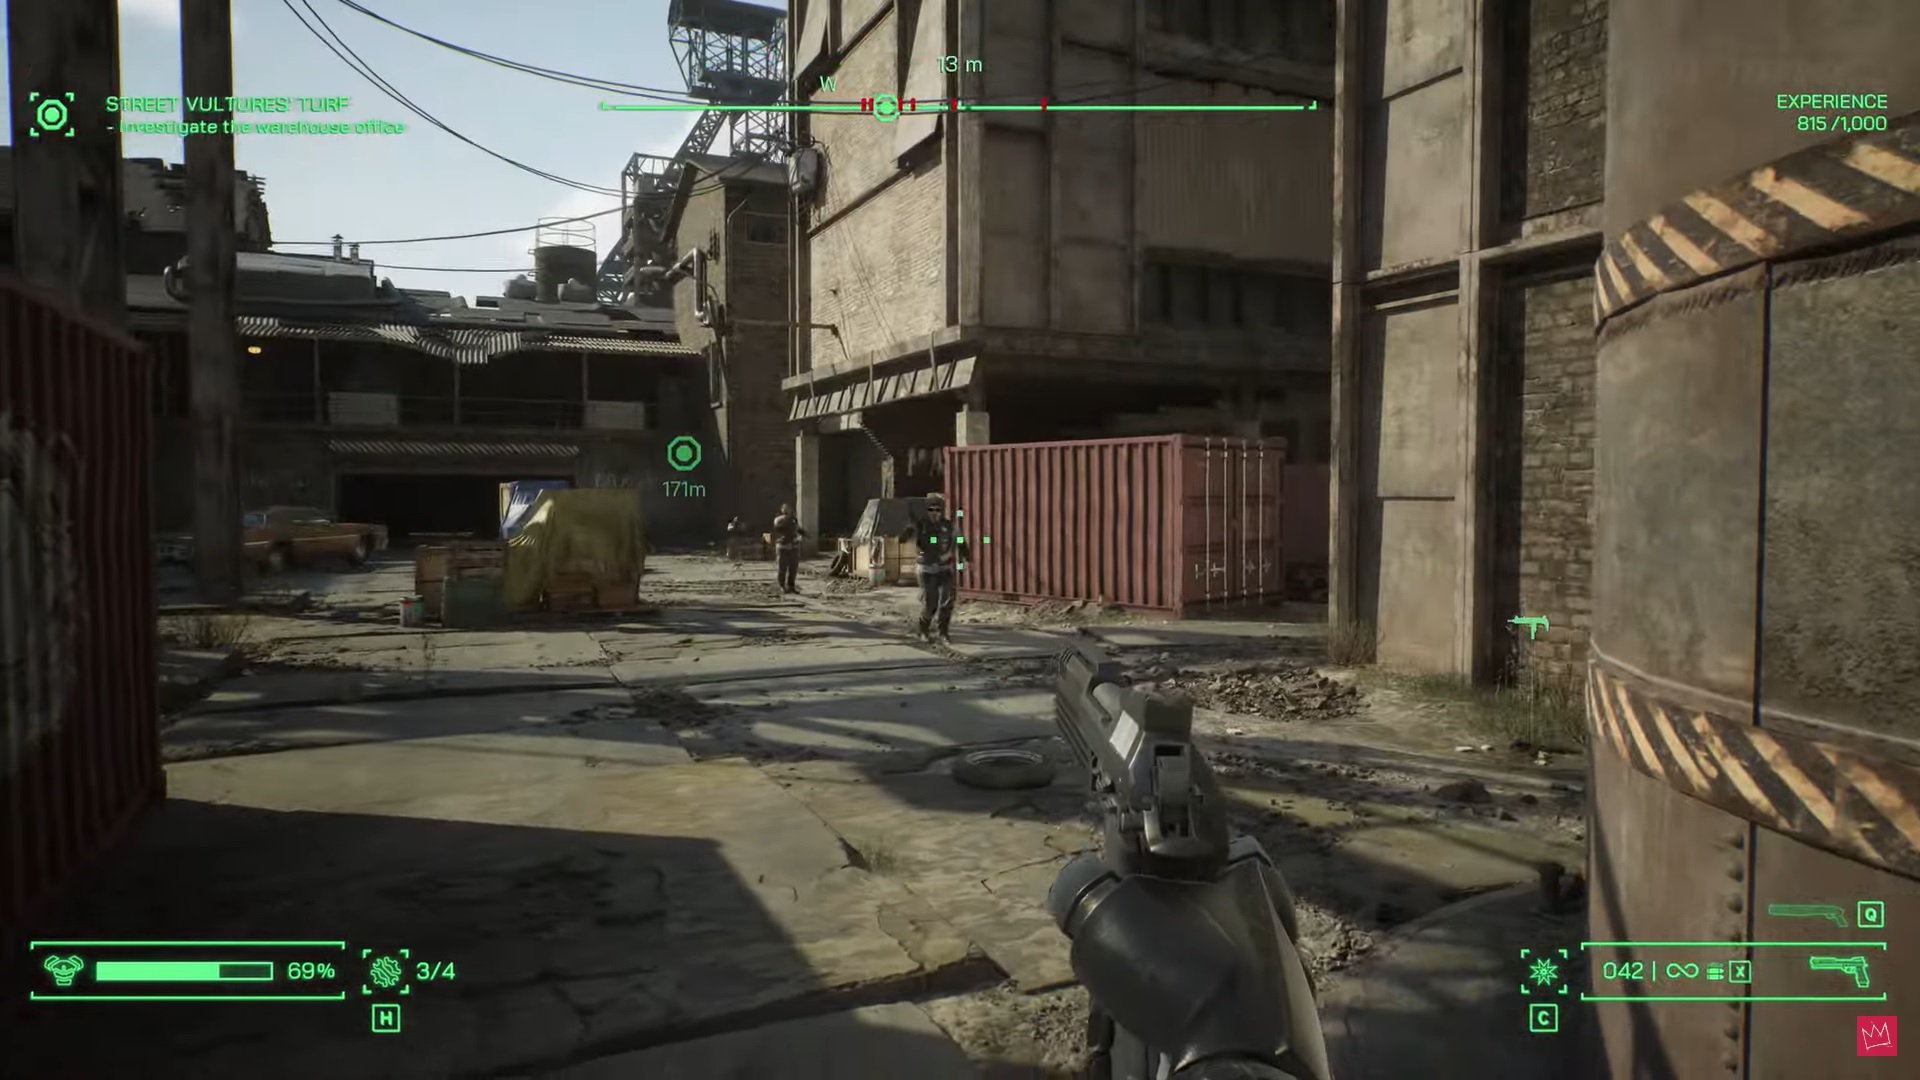 A screenshot of RoboCop firing at thugs.